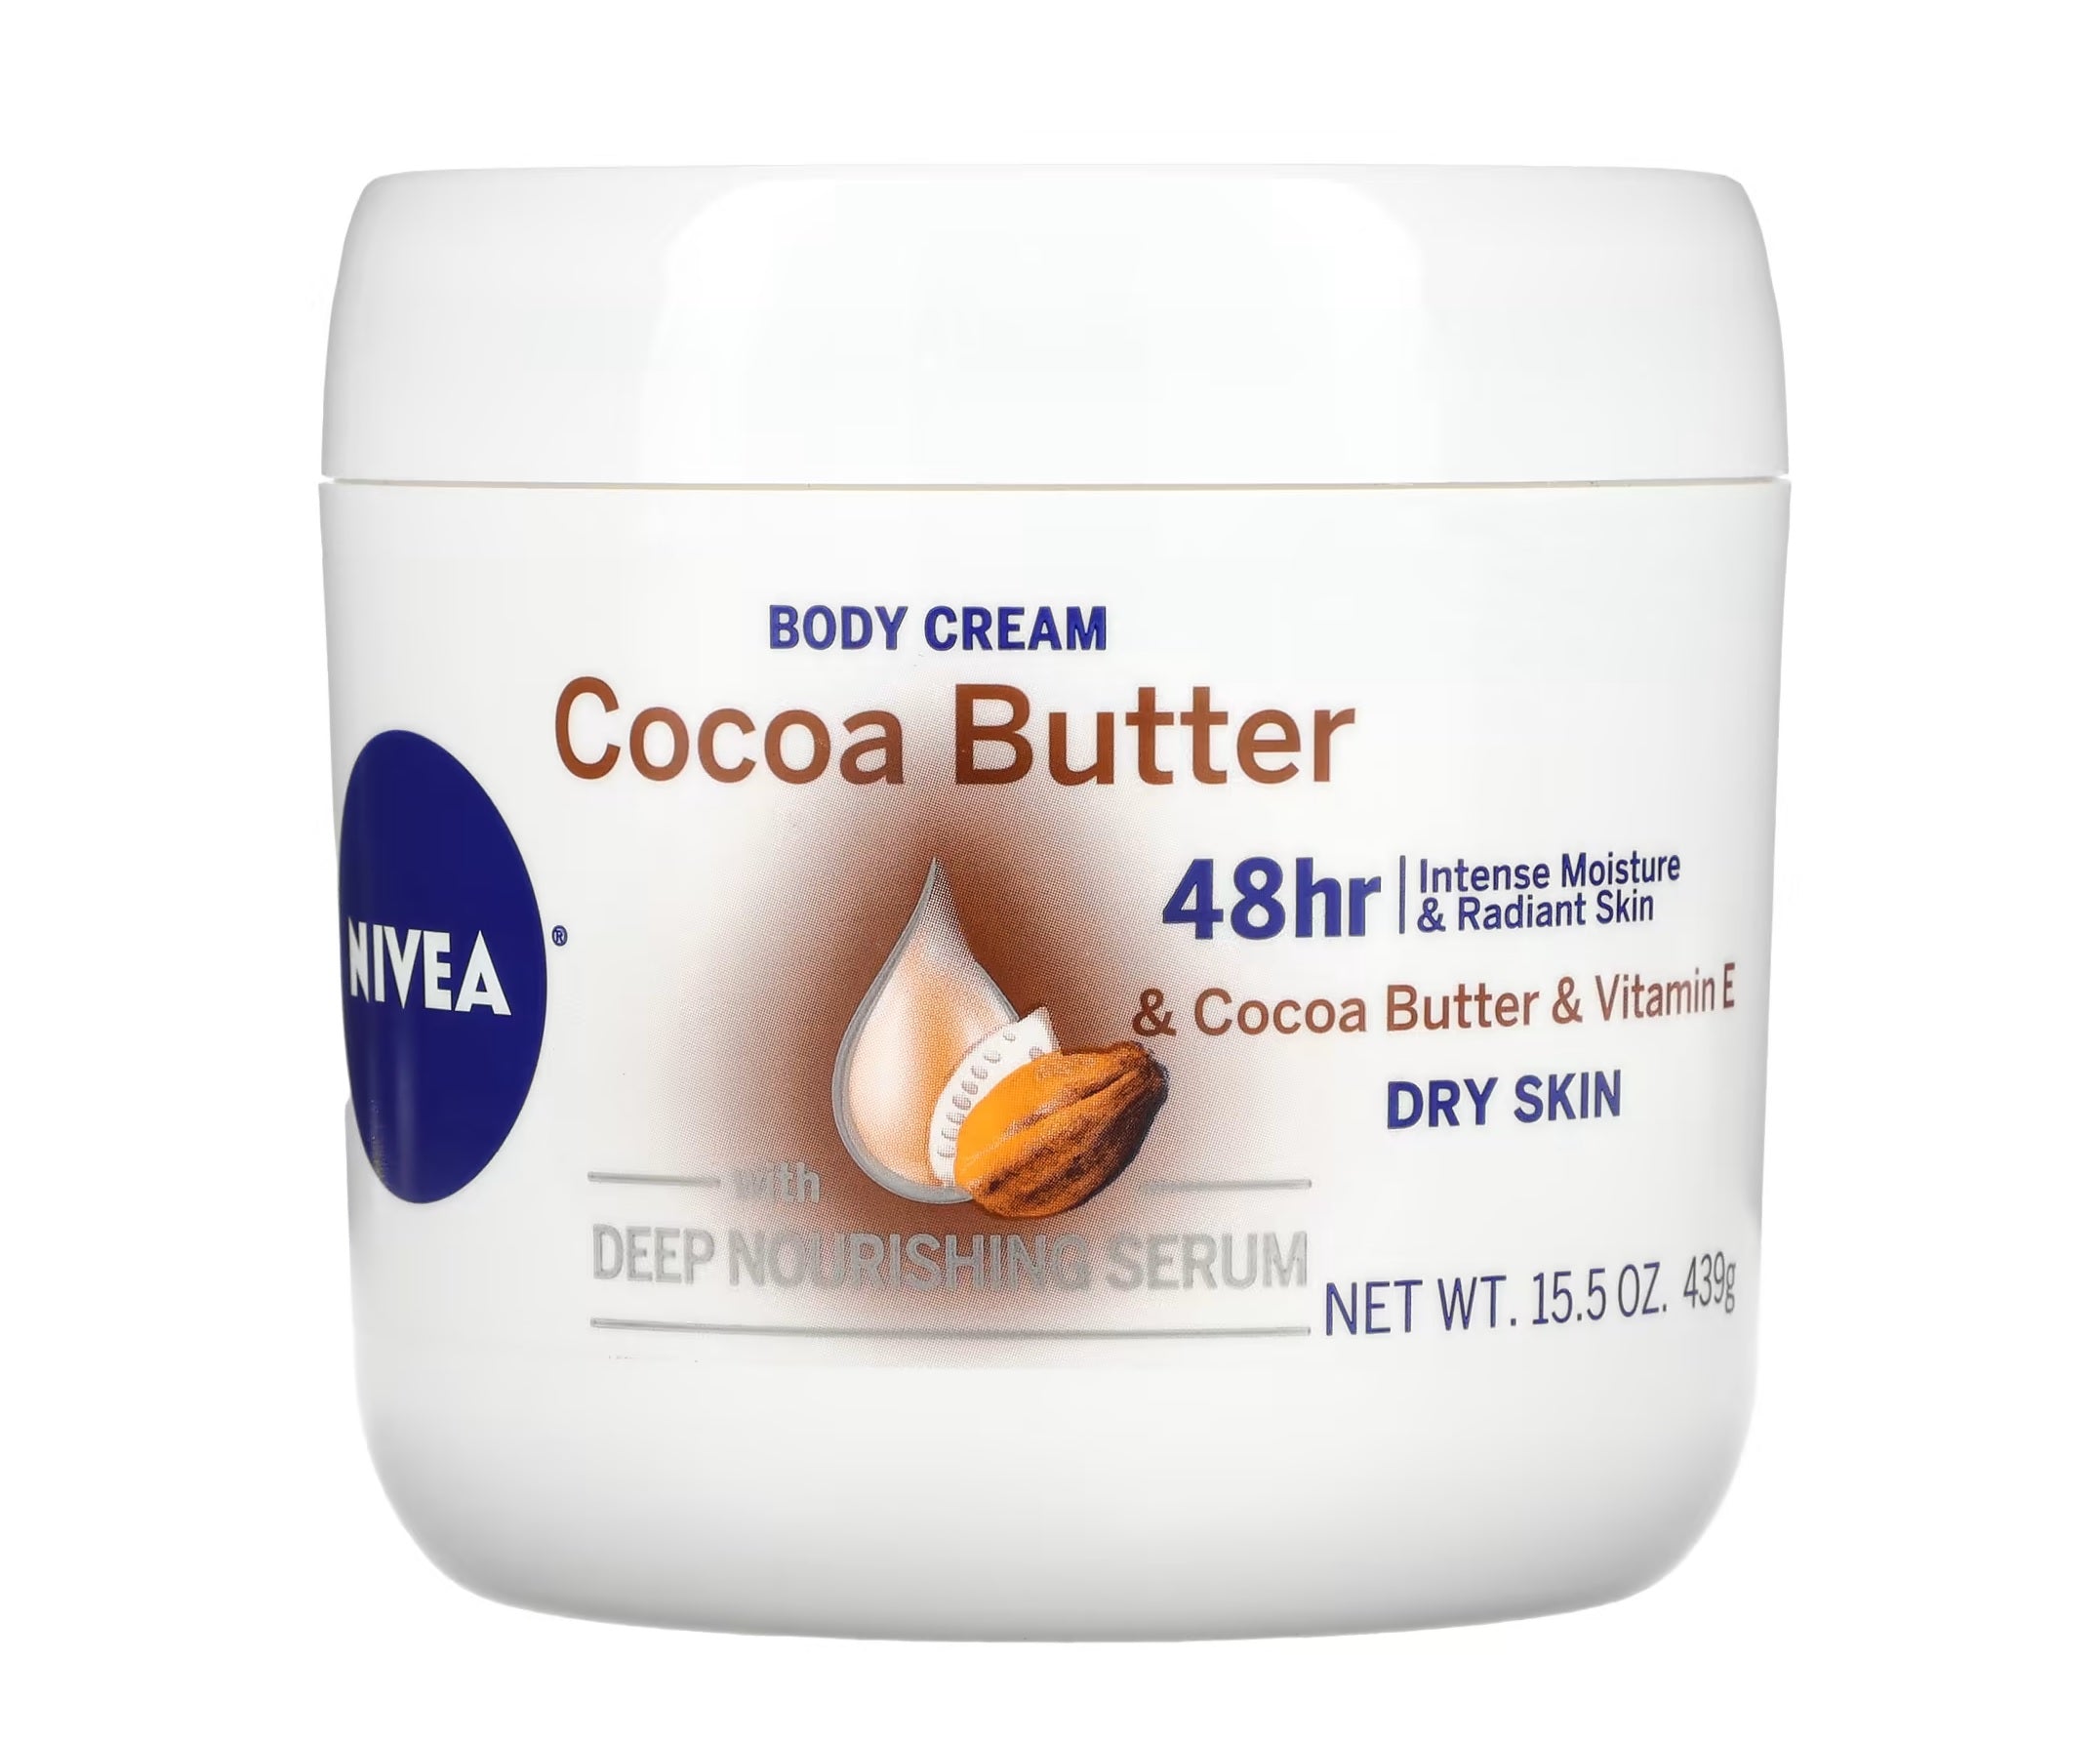 NIVEA Cocoa Butter Body Cream - 16oz/3pk